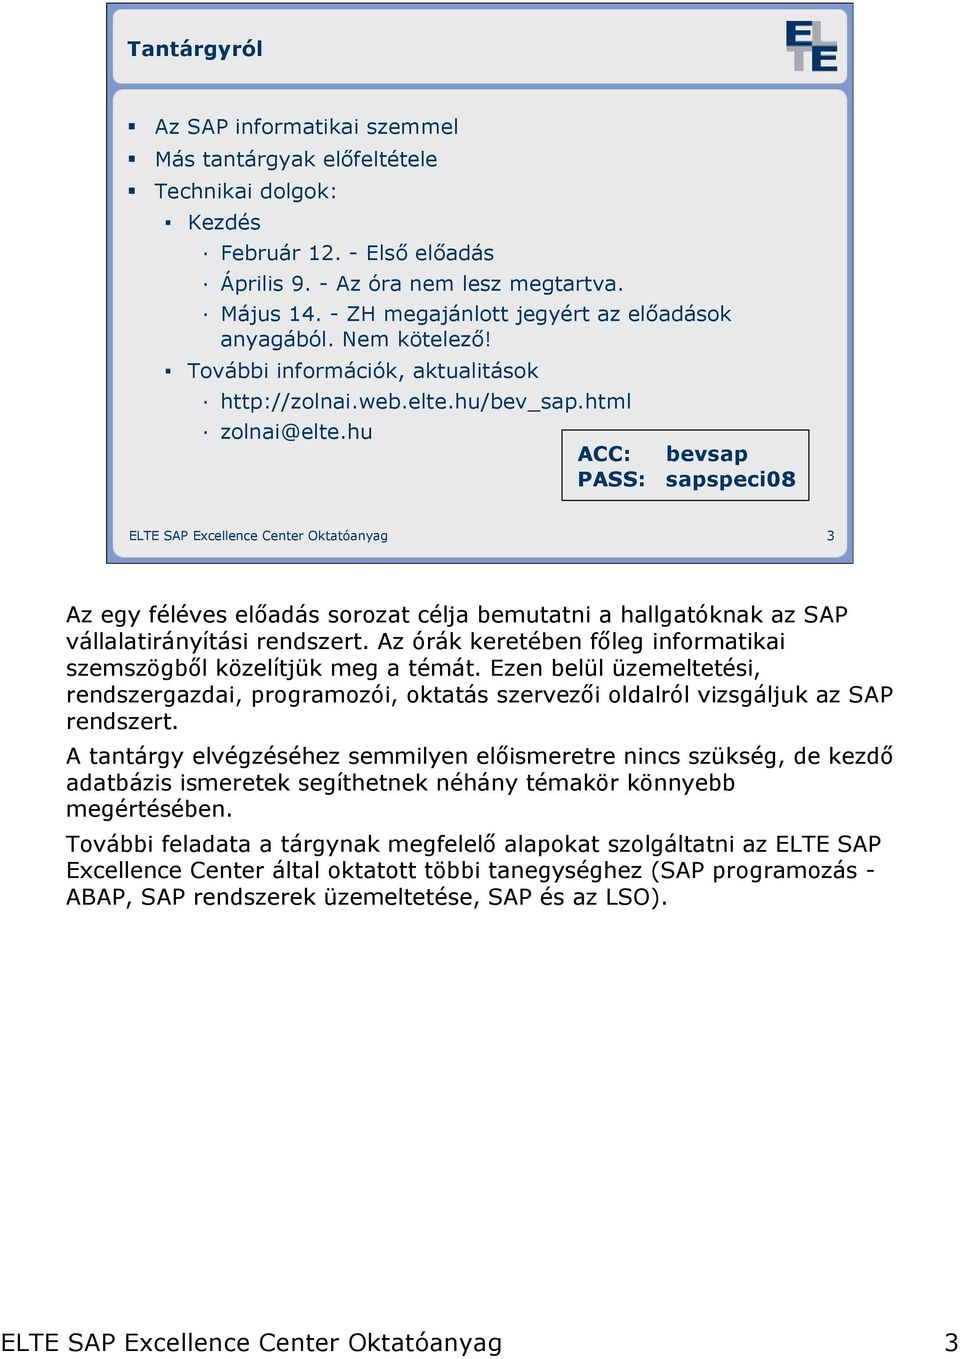 Bevezetés az SAP világába. 0. Bevezetı elıadás - PDF Ingyenes letöltés